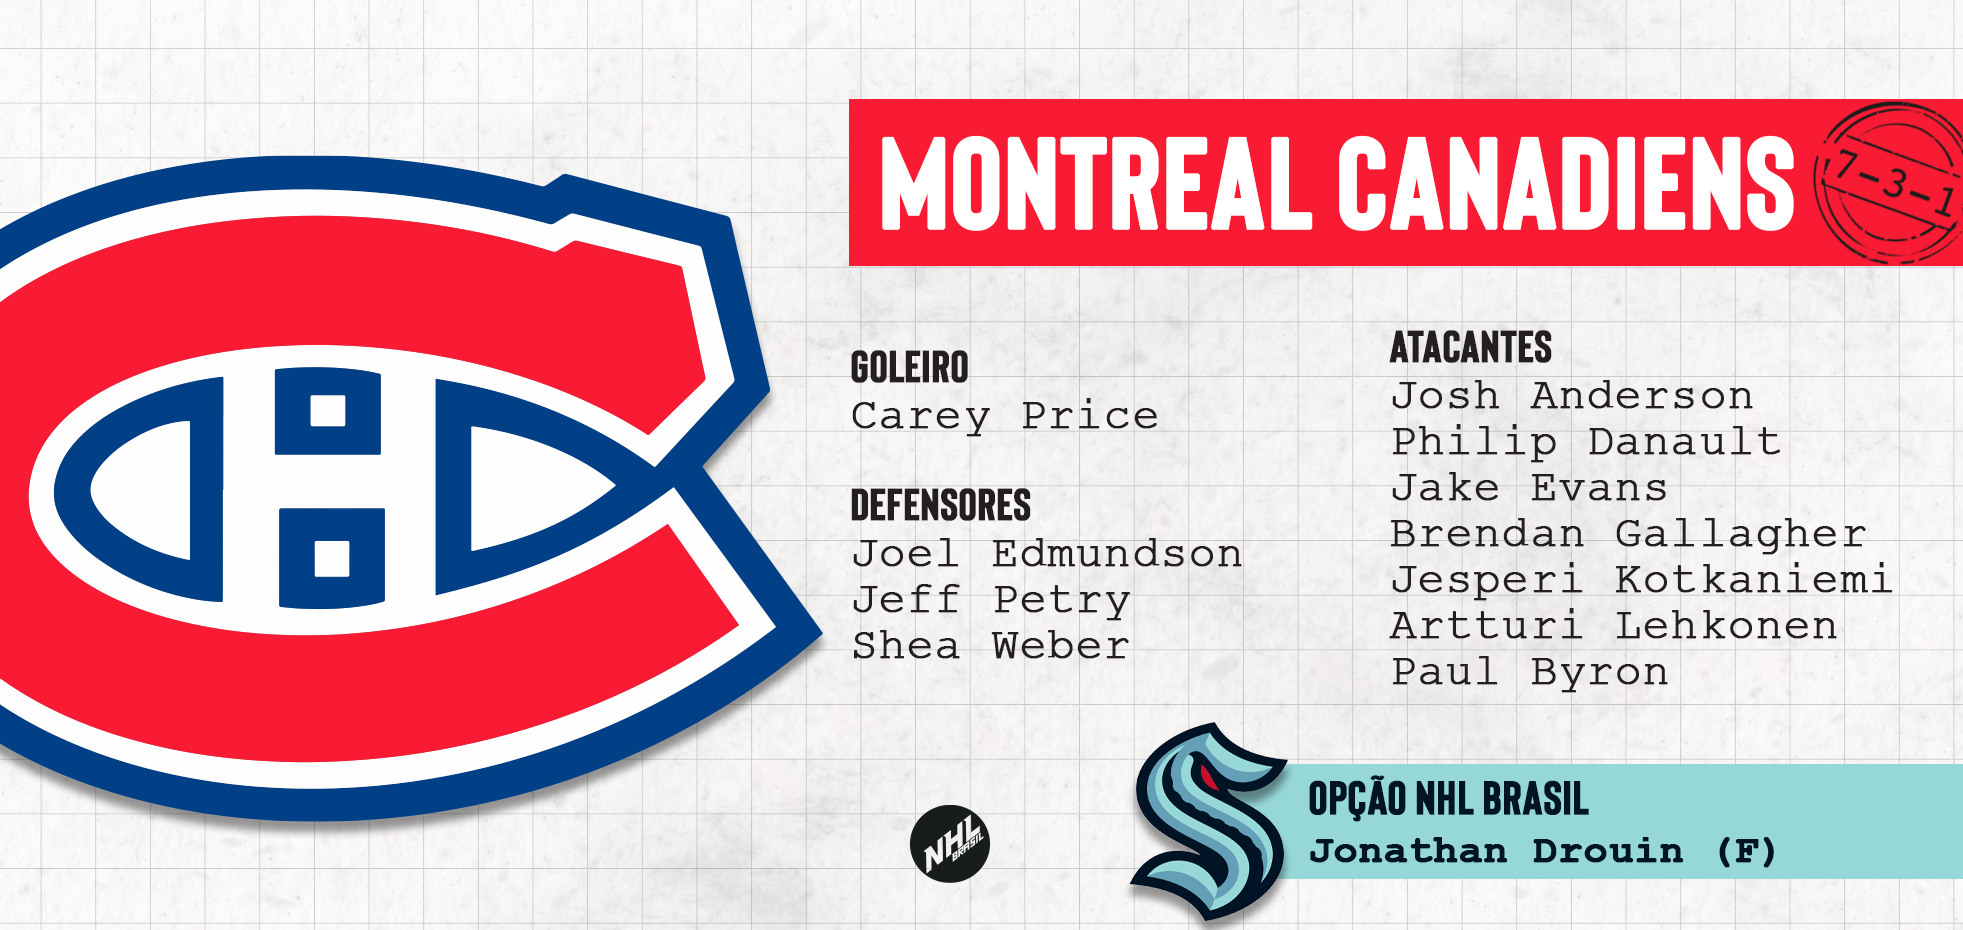 MONTREAL CANADIENS - lista de jogadores protegidos na Divisão Atlântica da NHL